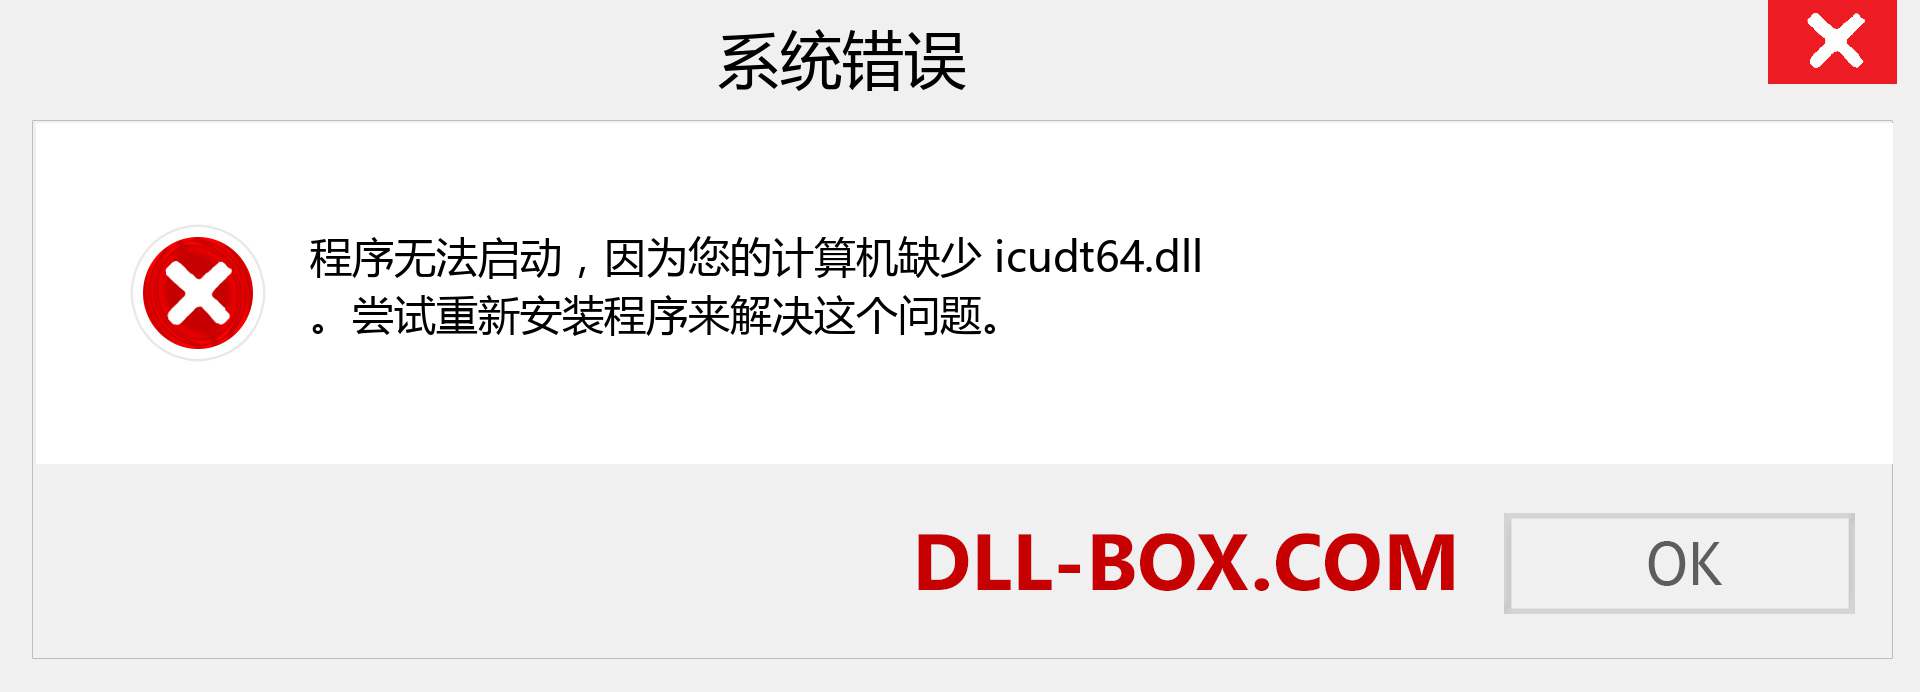 icudt64.dll 文件丢失？。 适用于 Windows 7、8、10 的下载 - 修复 Windows、照片、图像上的 icudt64 dll 丢失错误